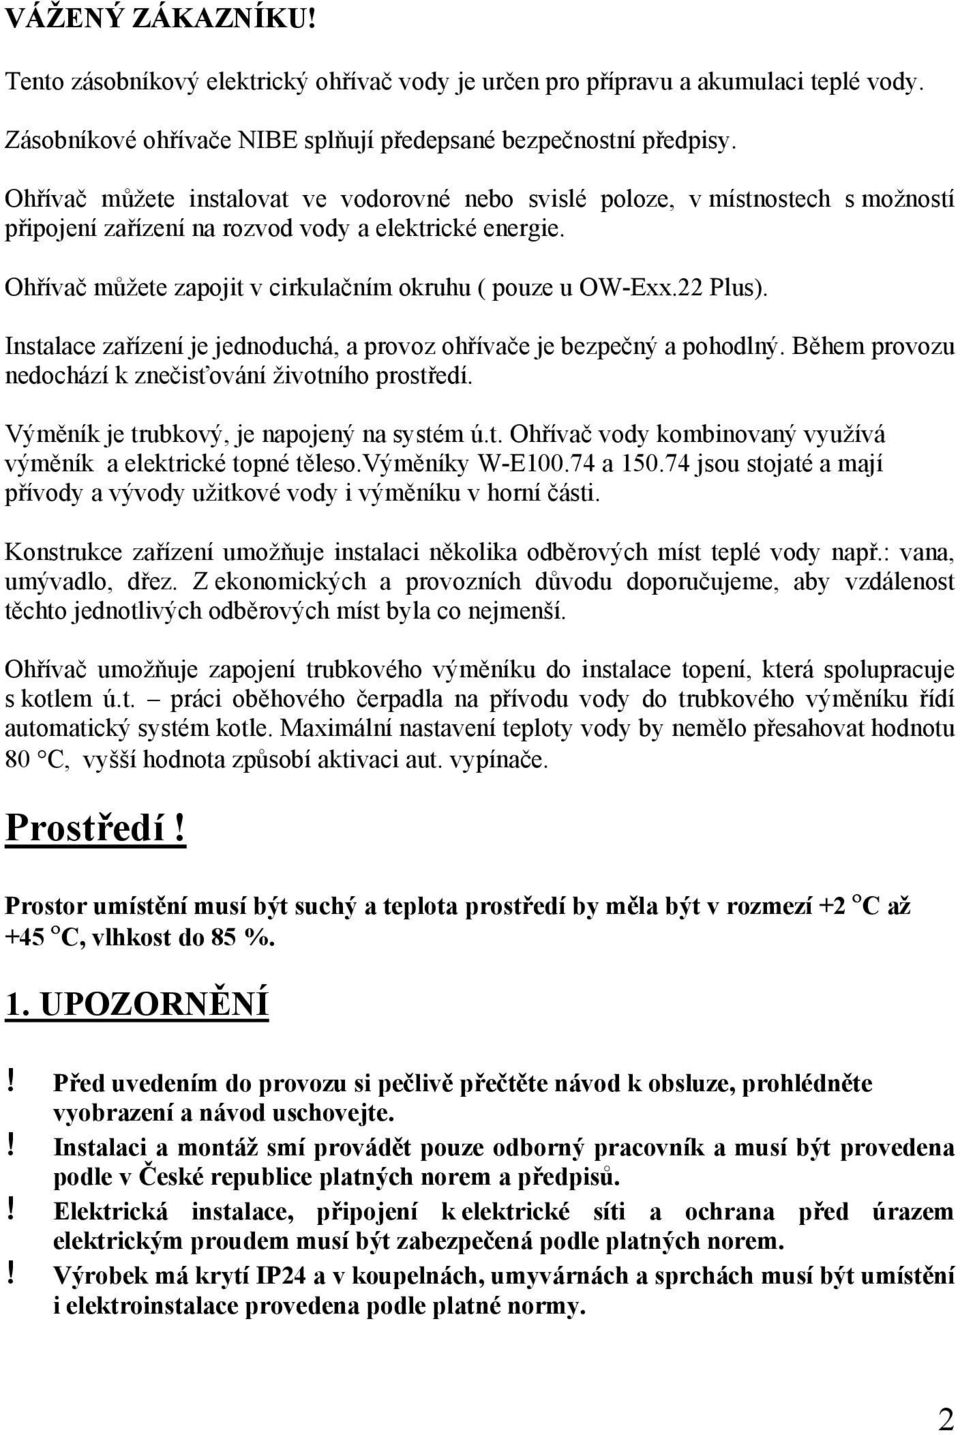 NÁVOD PRO MONTÁŽ A OBSLUHU - PDF Free Download